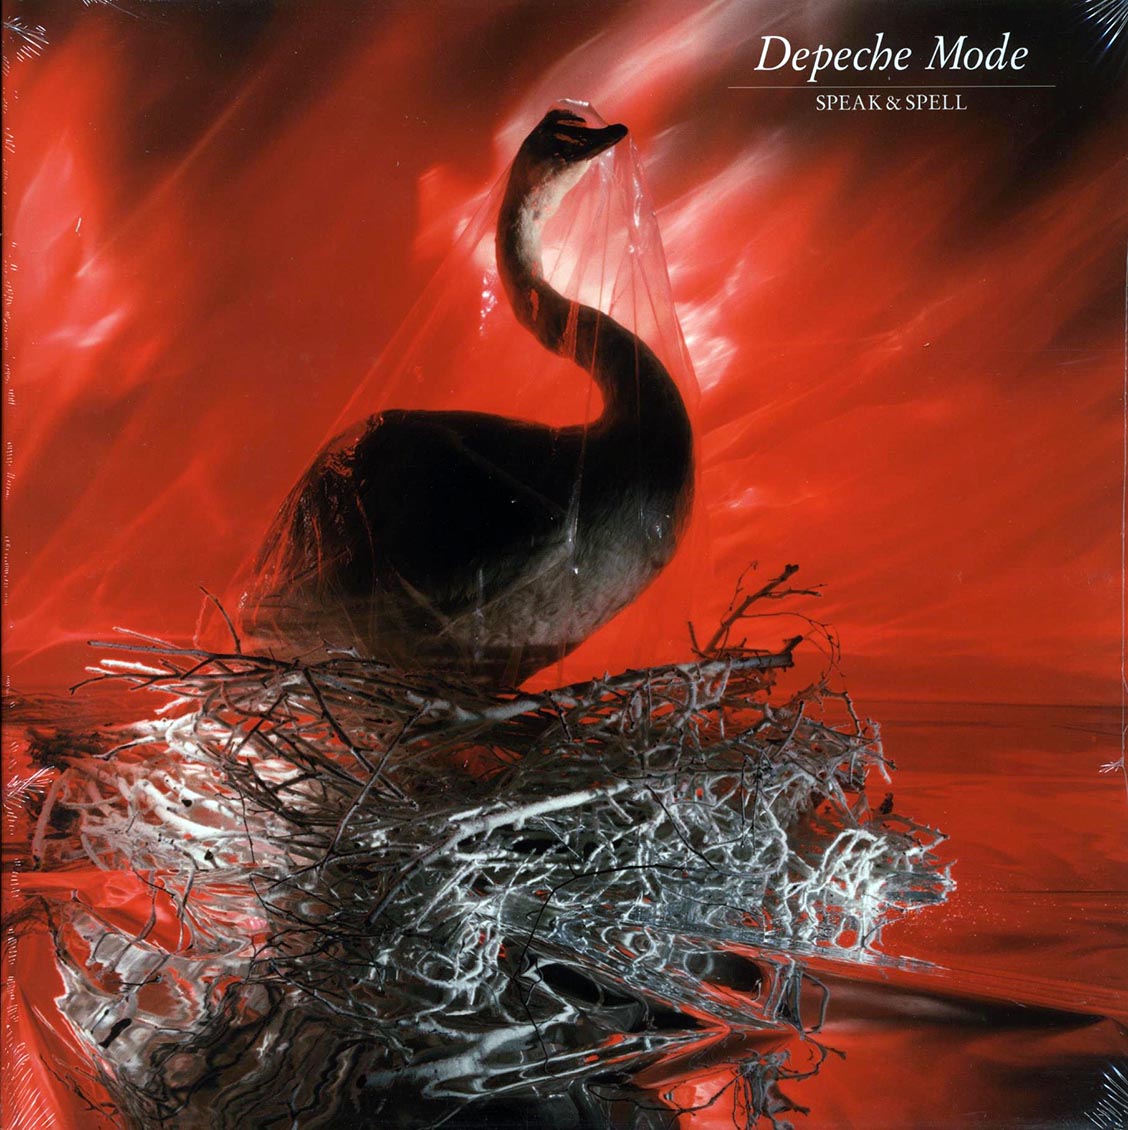 Depeche Mode - Speak & Spell (180g) (remastered) - Vinyl LP